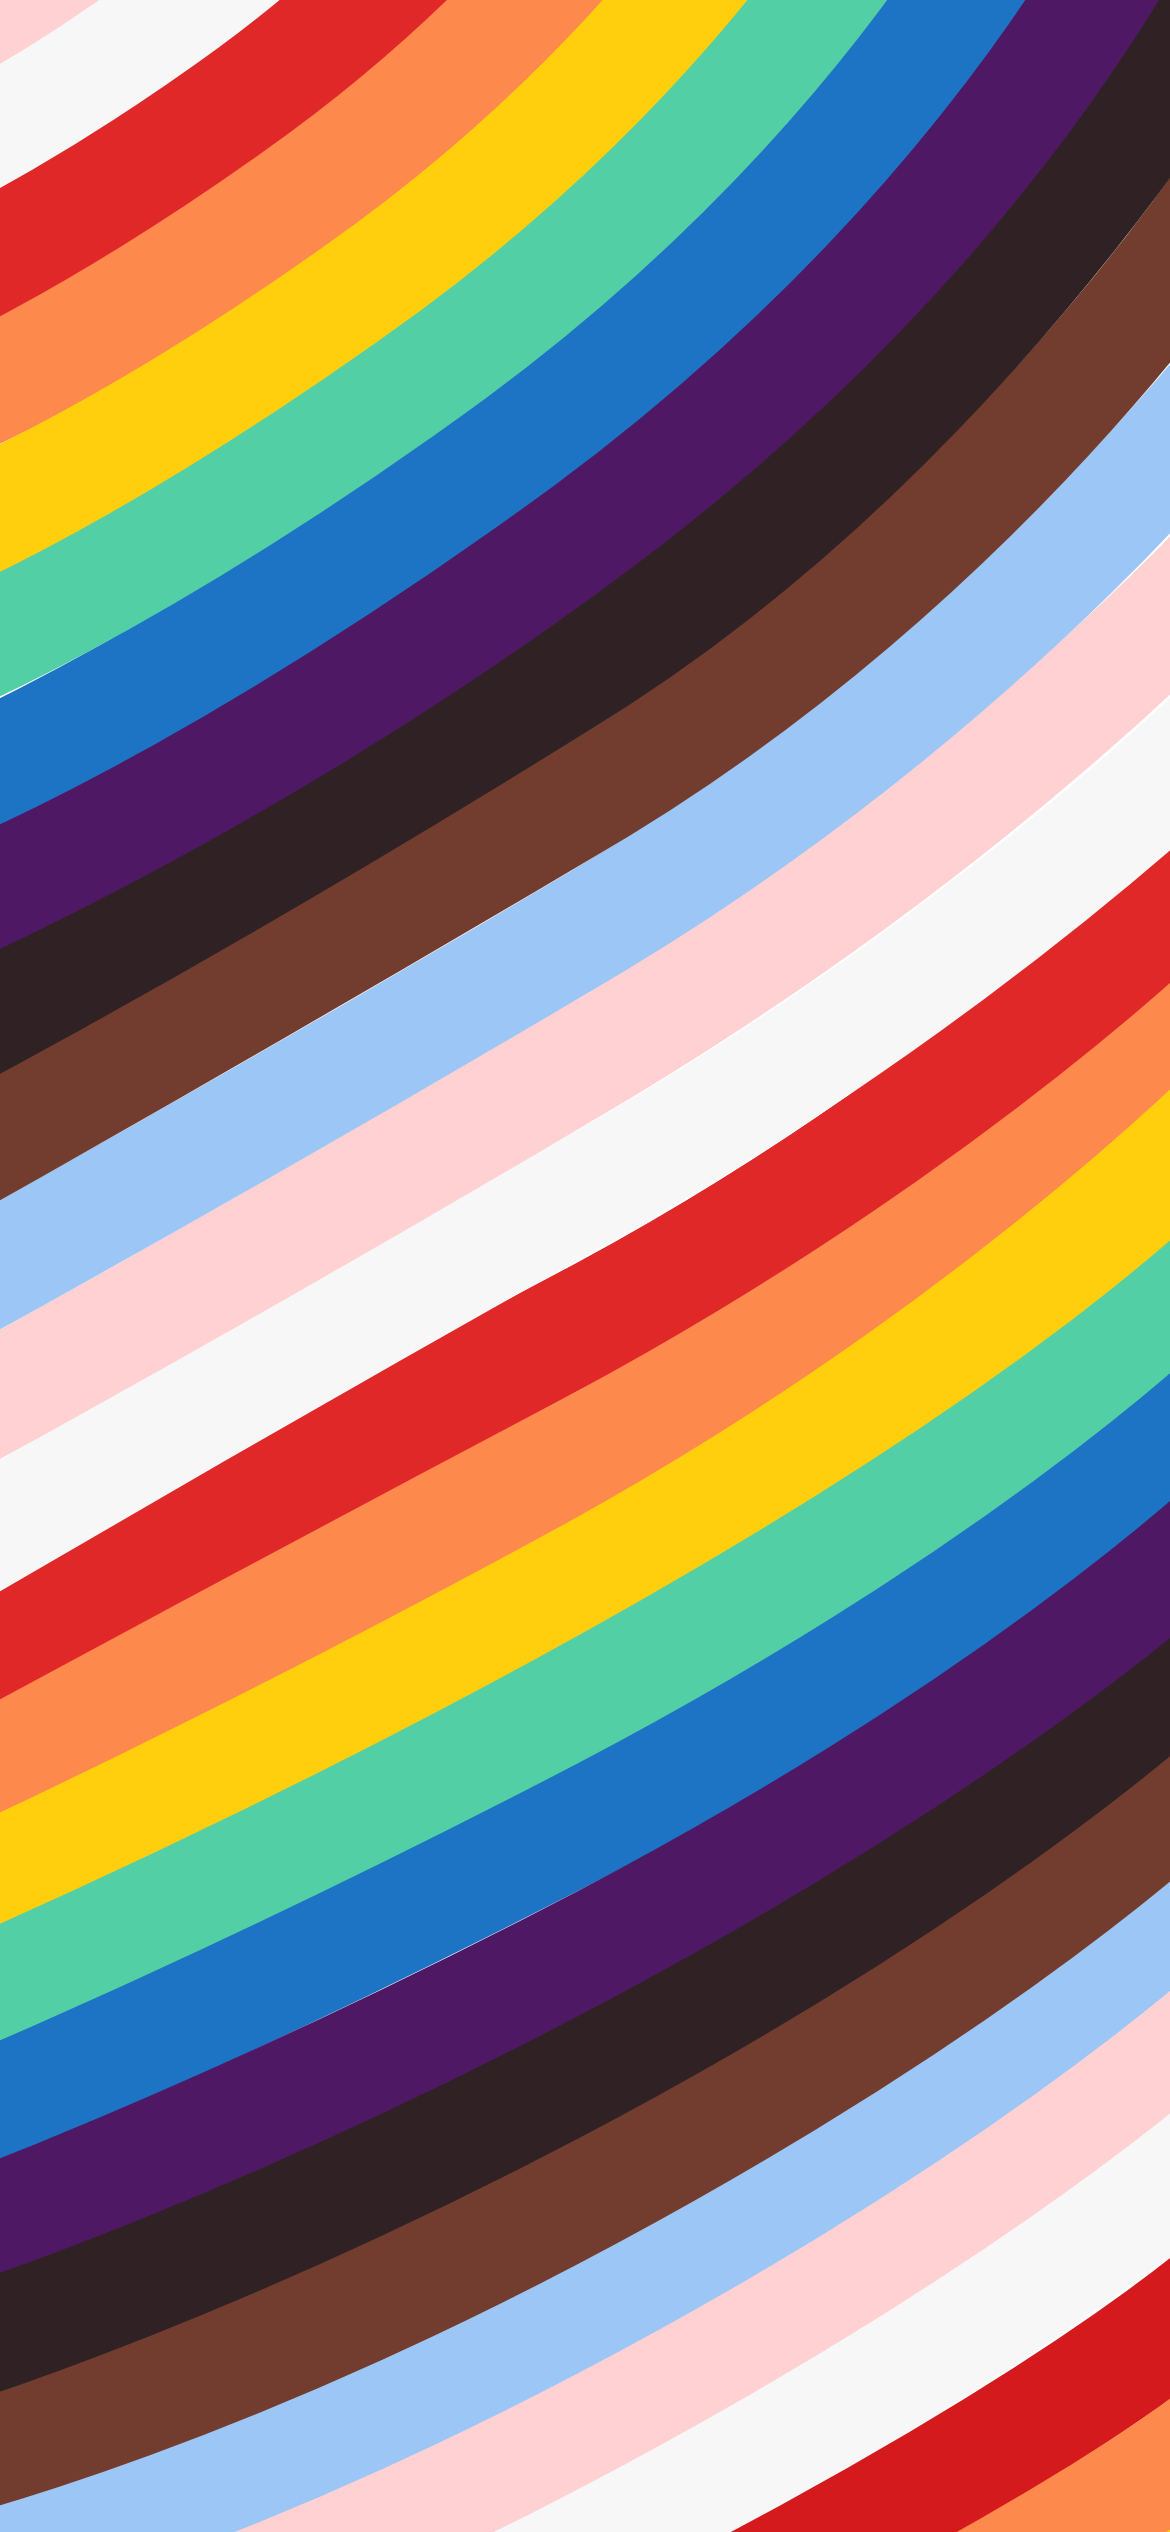 Progress Pride Flag Wallpapers - Wallpaper Cave